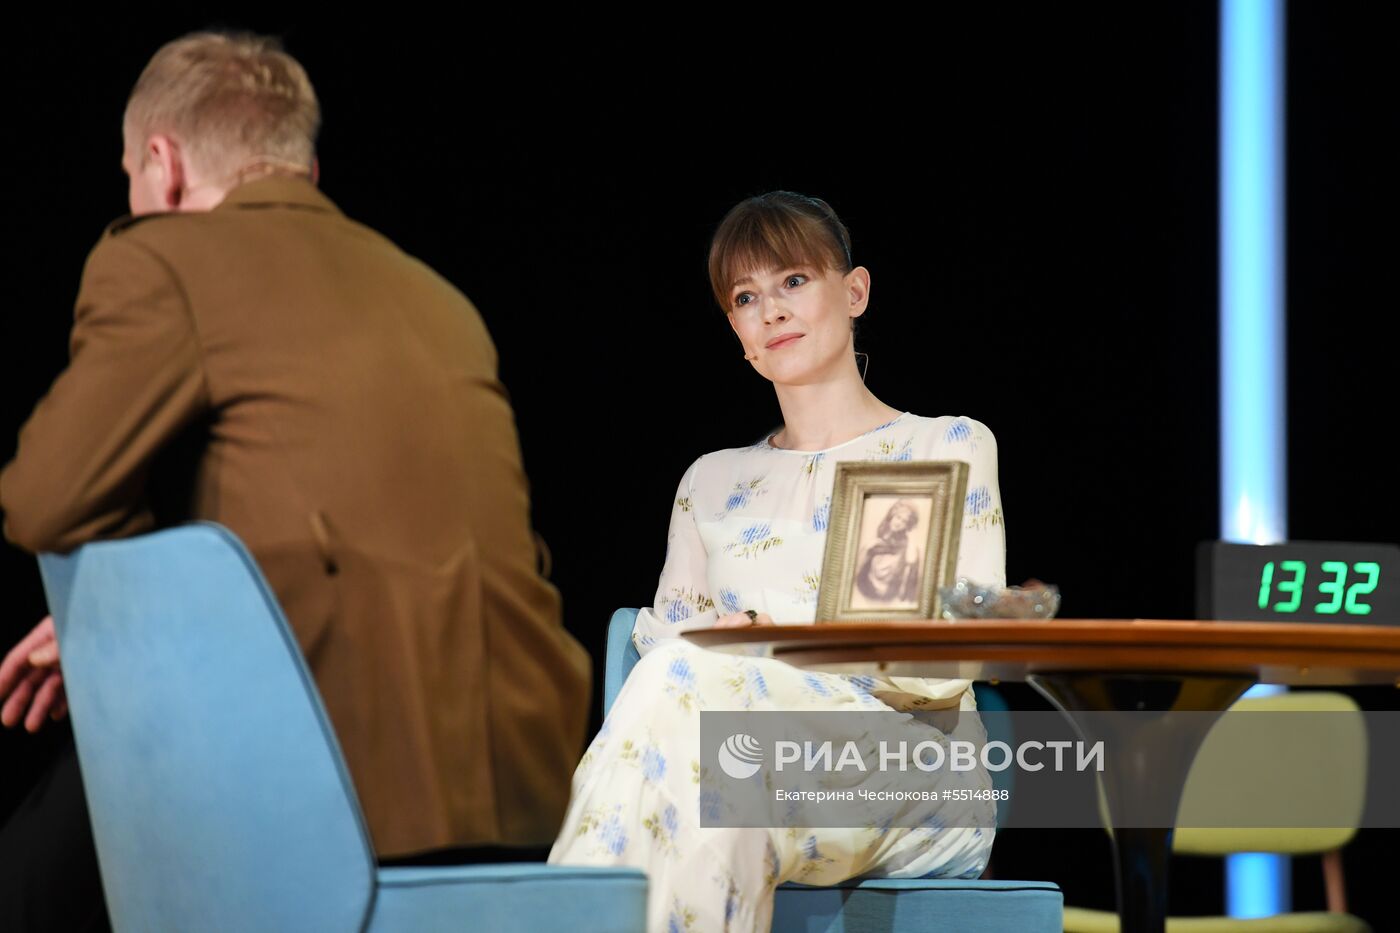 Показ спектакля «Три сестры» в театре им. А.П. Чехова